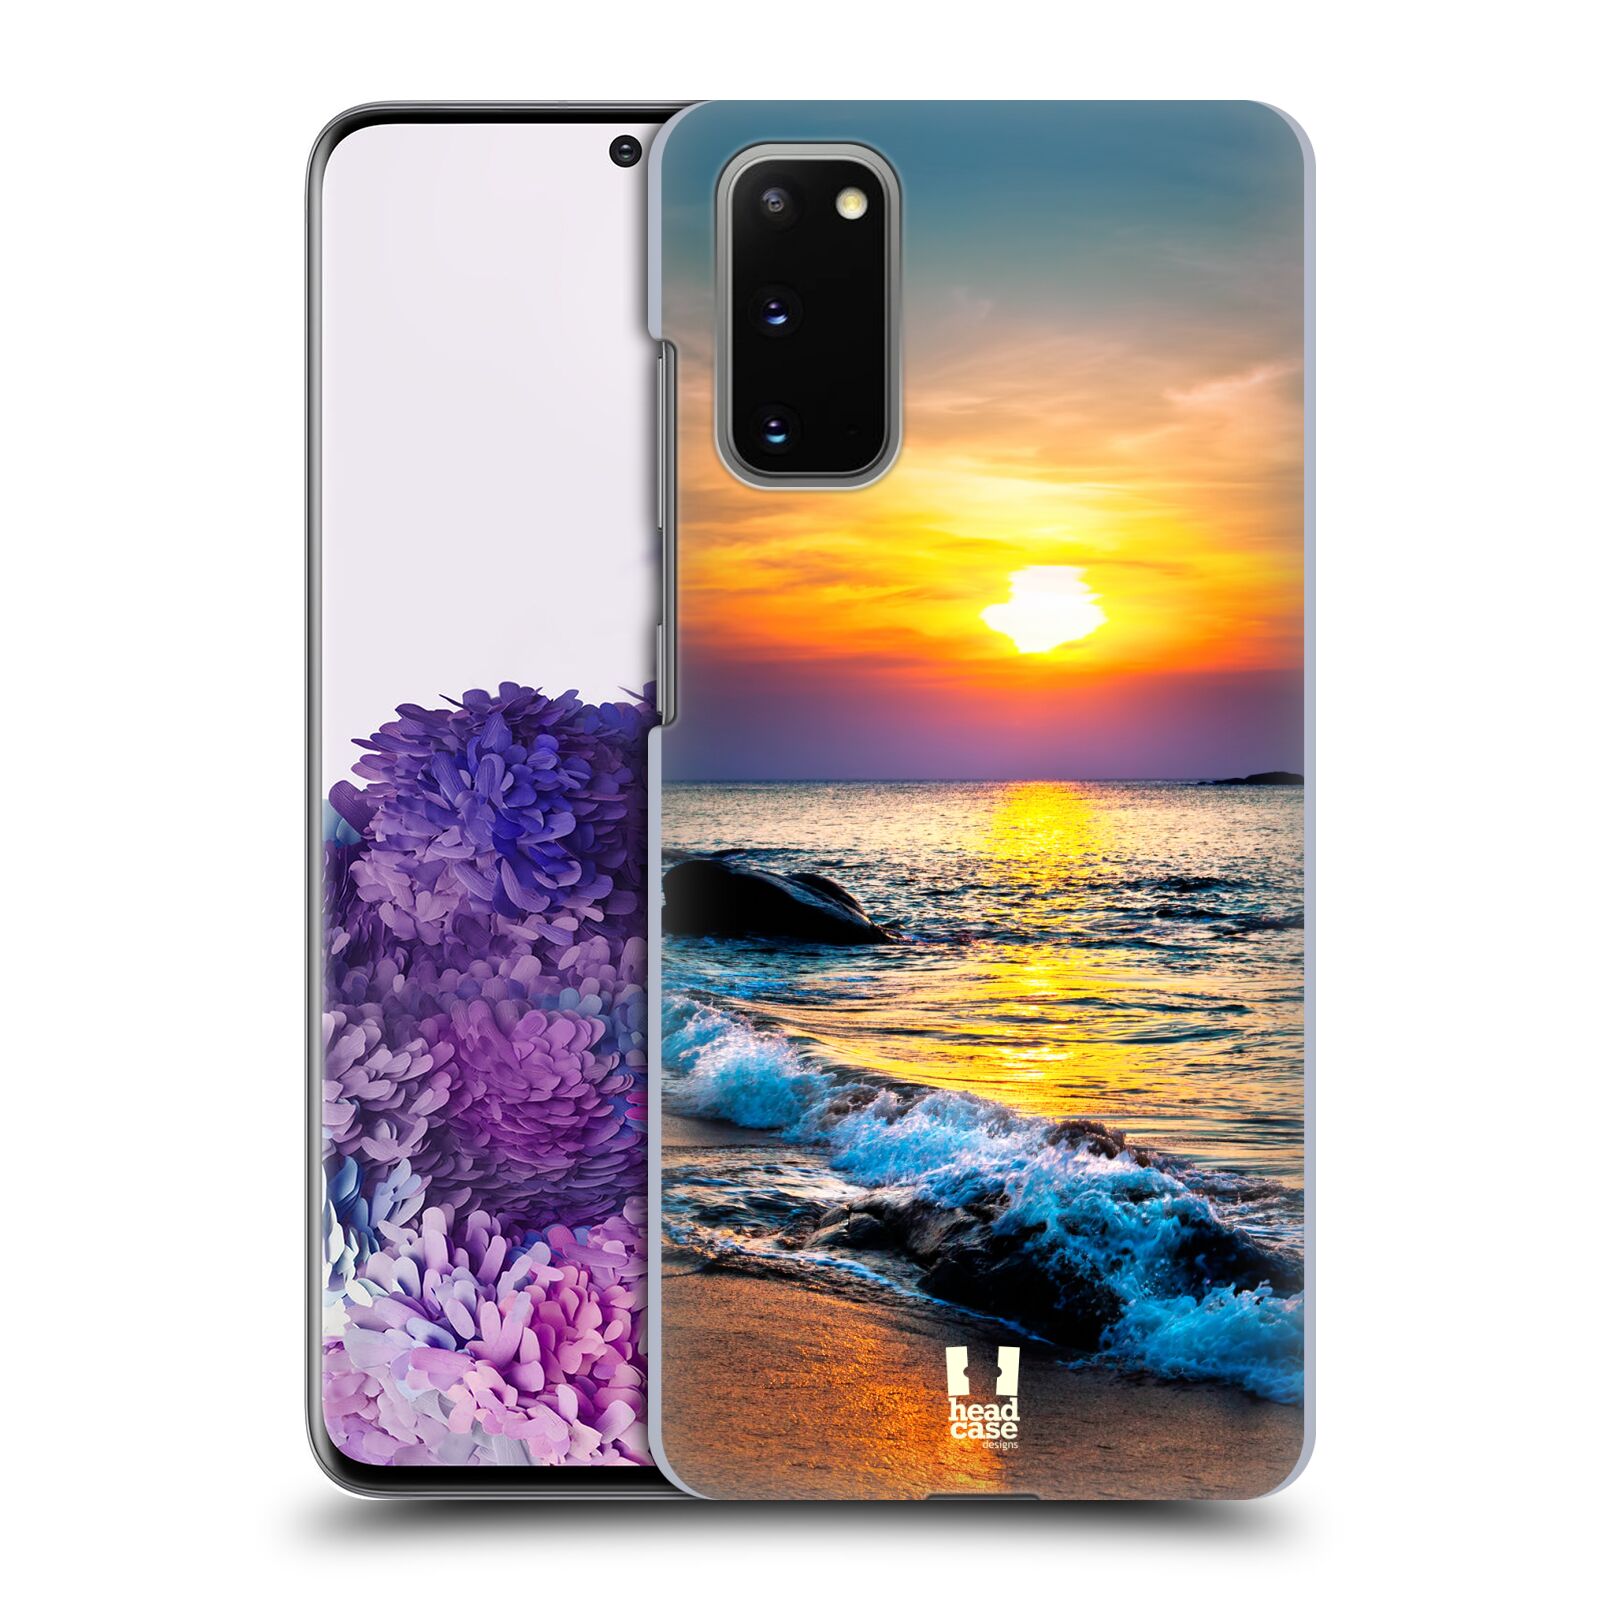 Pouzdro na mobil Samsung Galaxy S20 - HEAD CASE - vzor Pláže a Moře barevný západ slunce